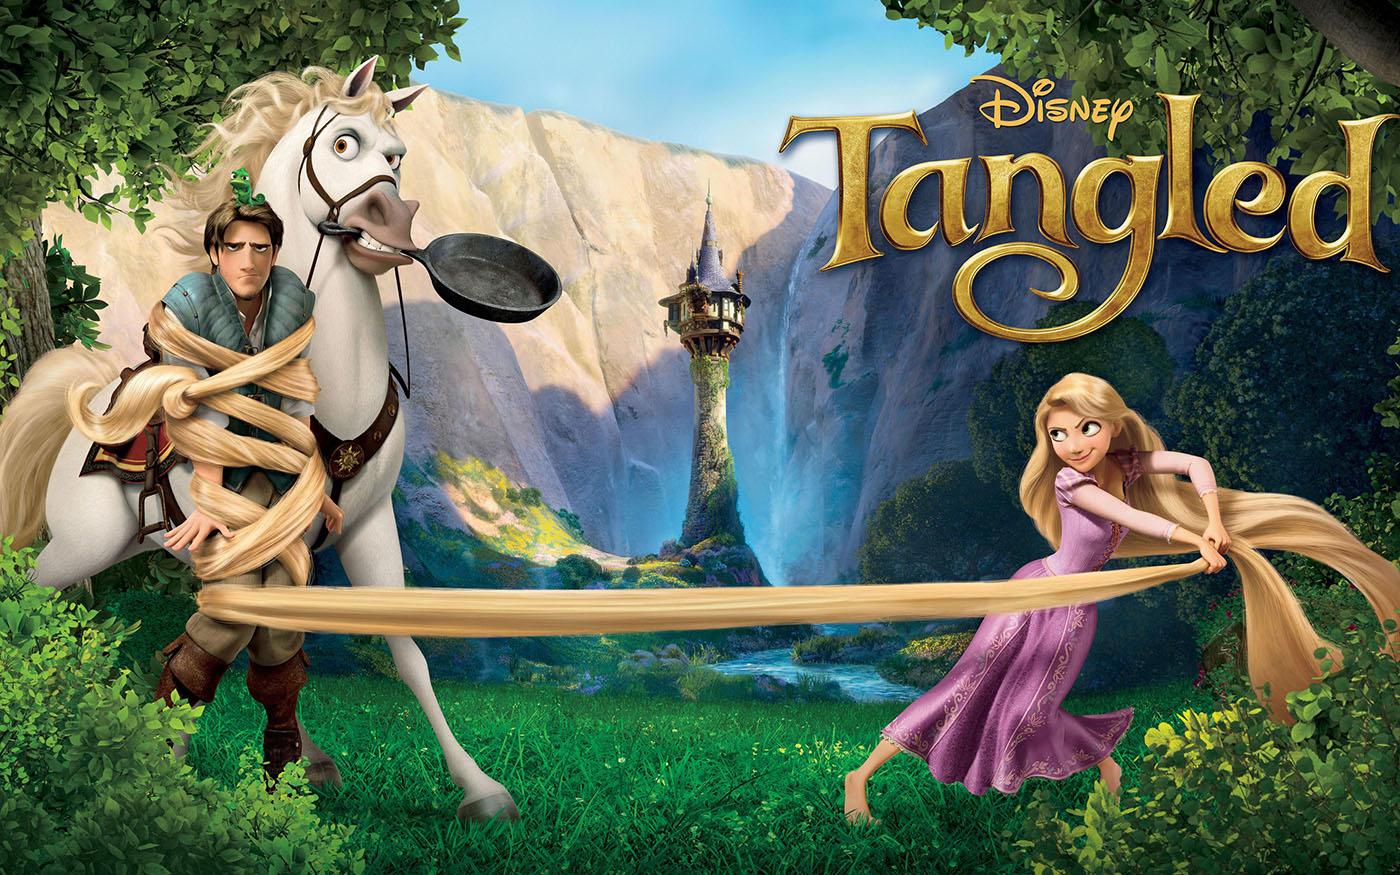 Tangled. Image: Courtesy Disney